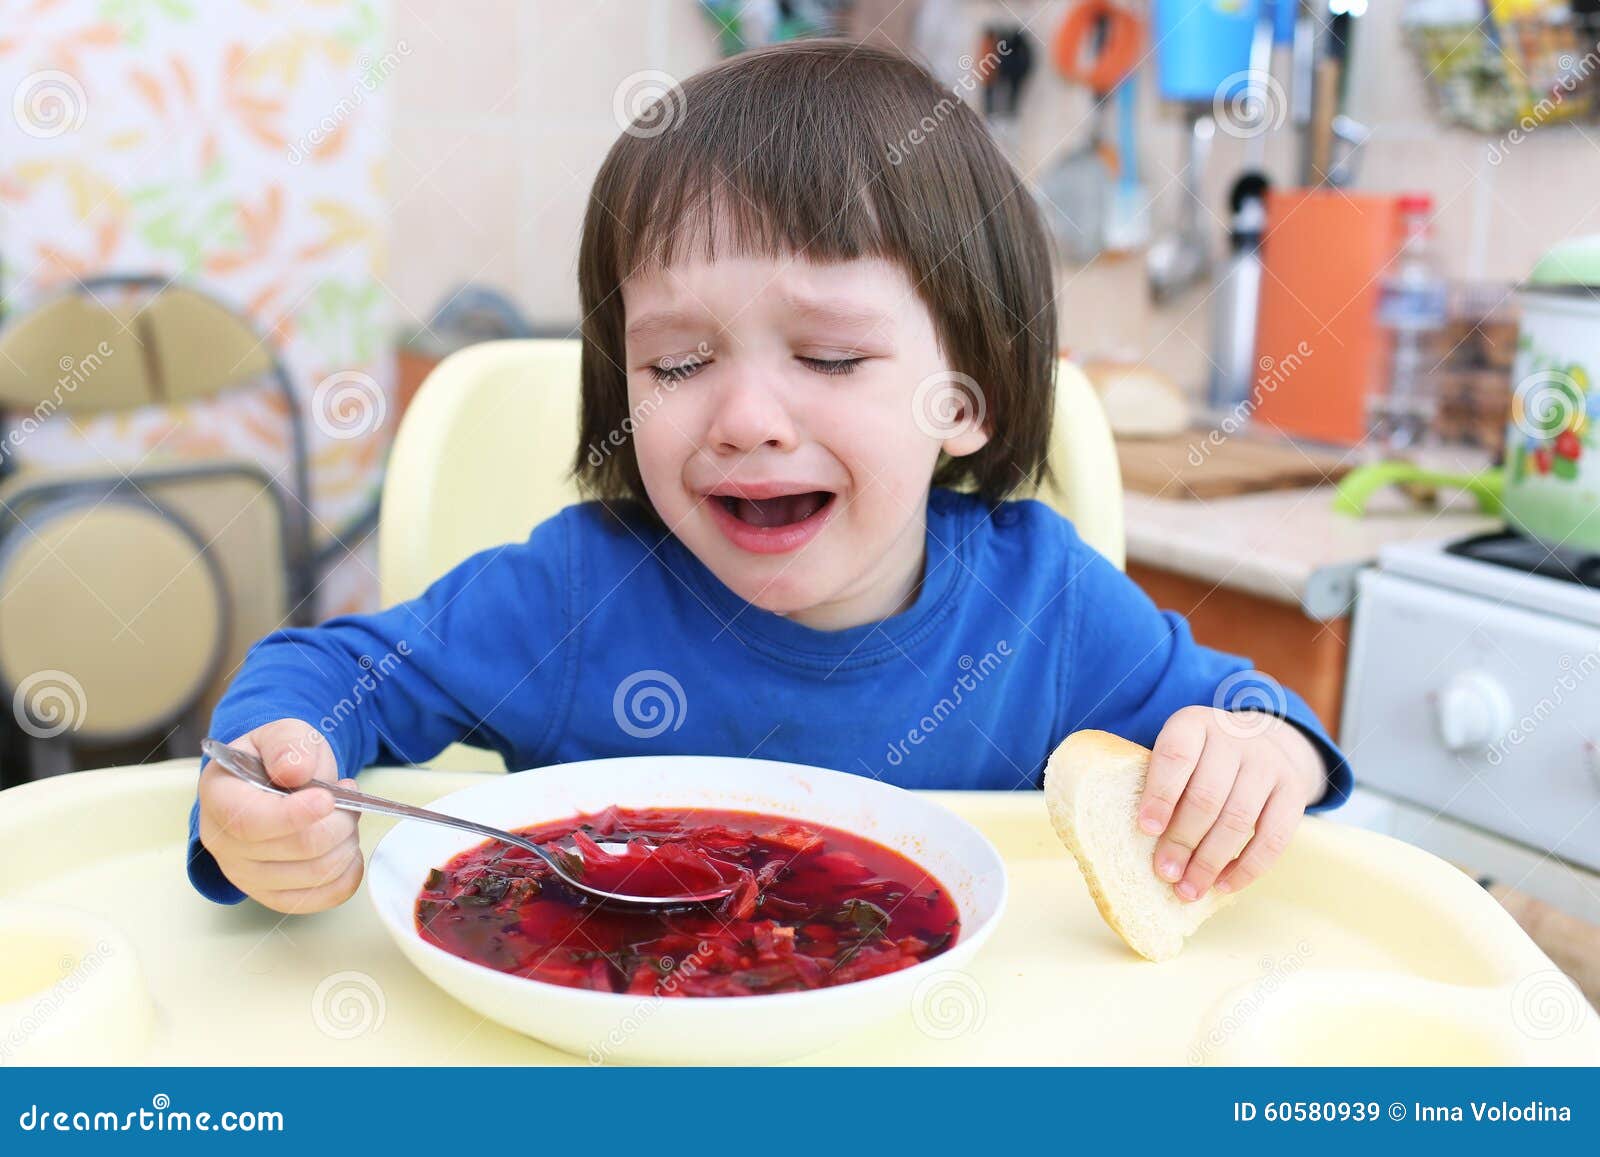 Дети кушают и плачут. Мальчик с тарелкой. Ребенок ест суп. Борщ для детей. Девочка ест борщ.